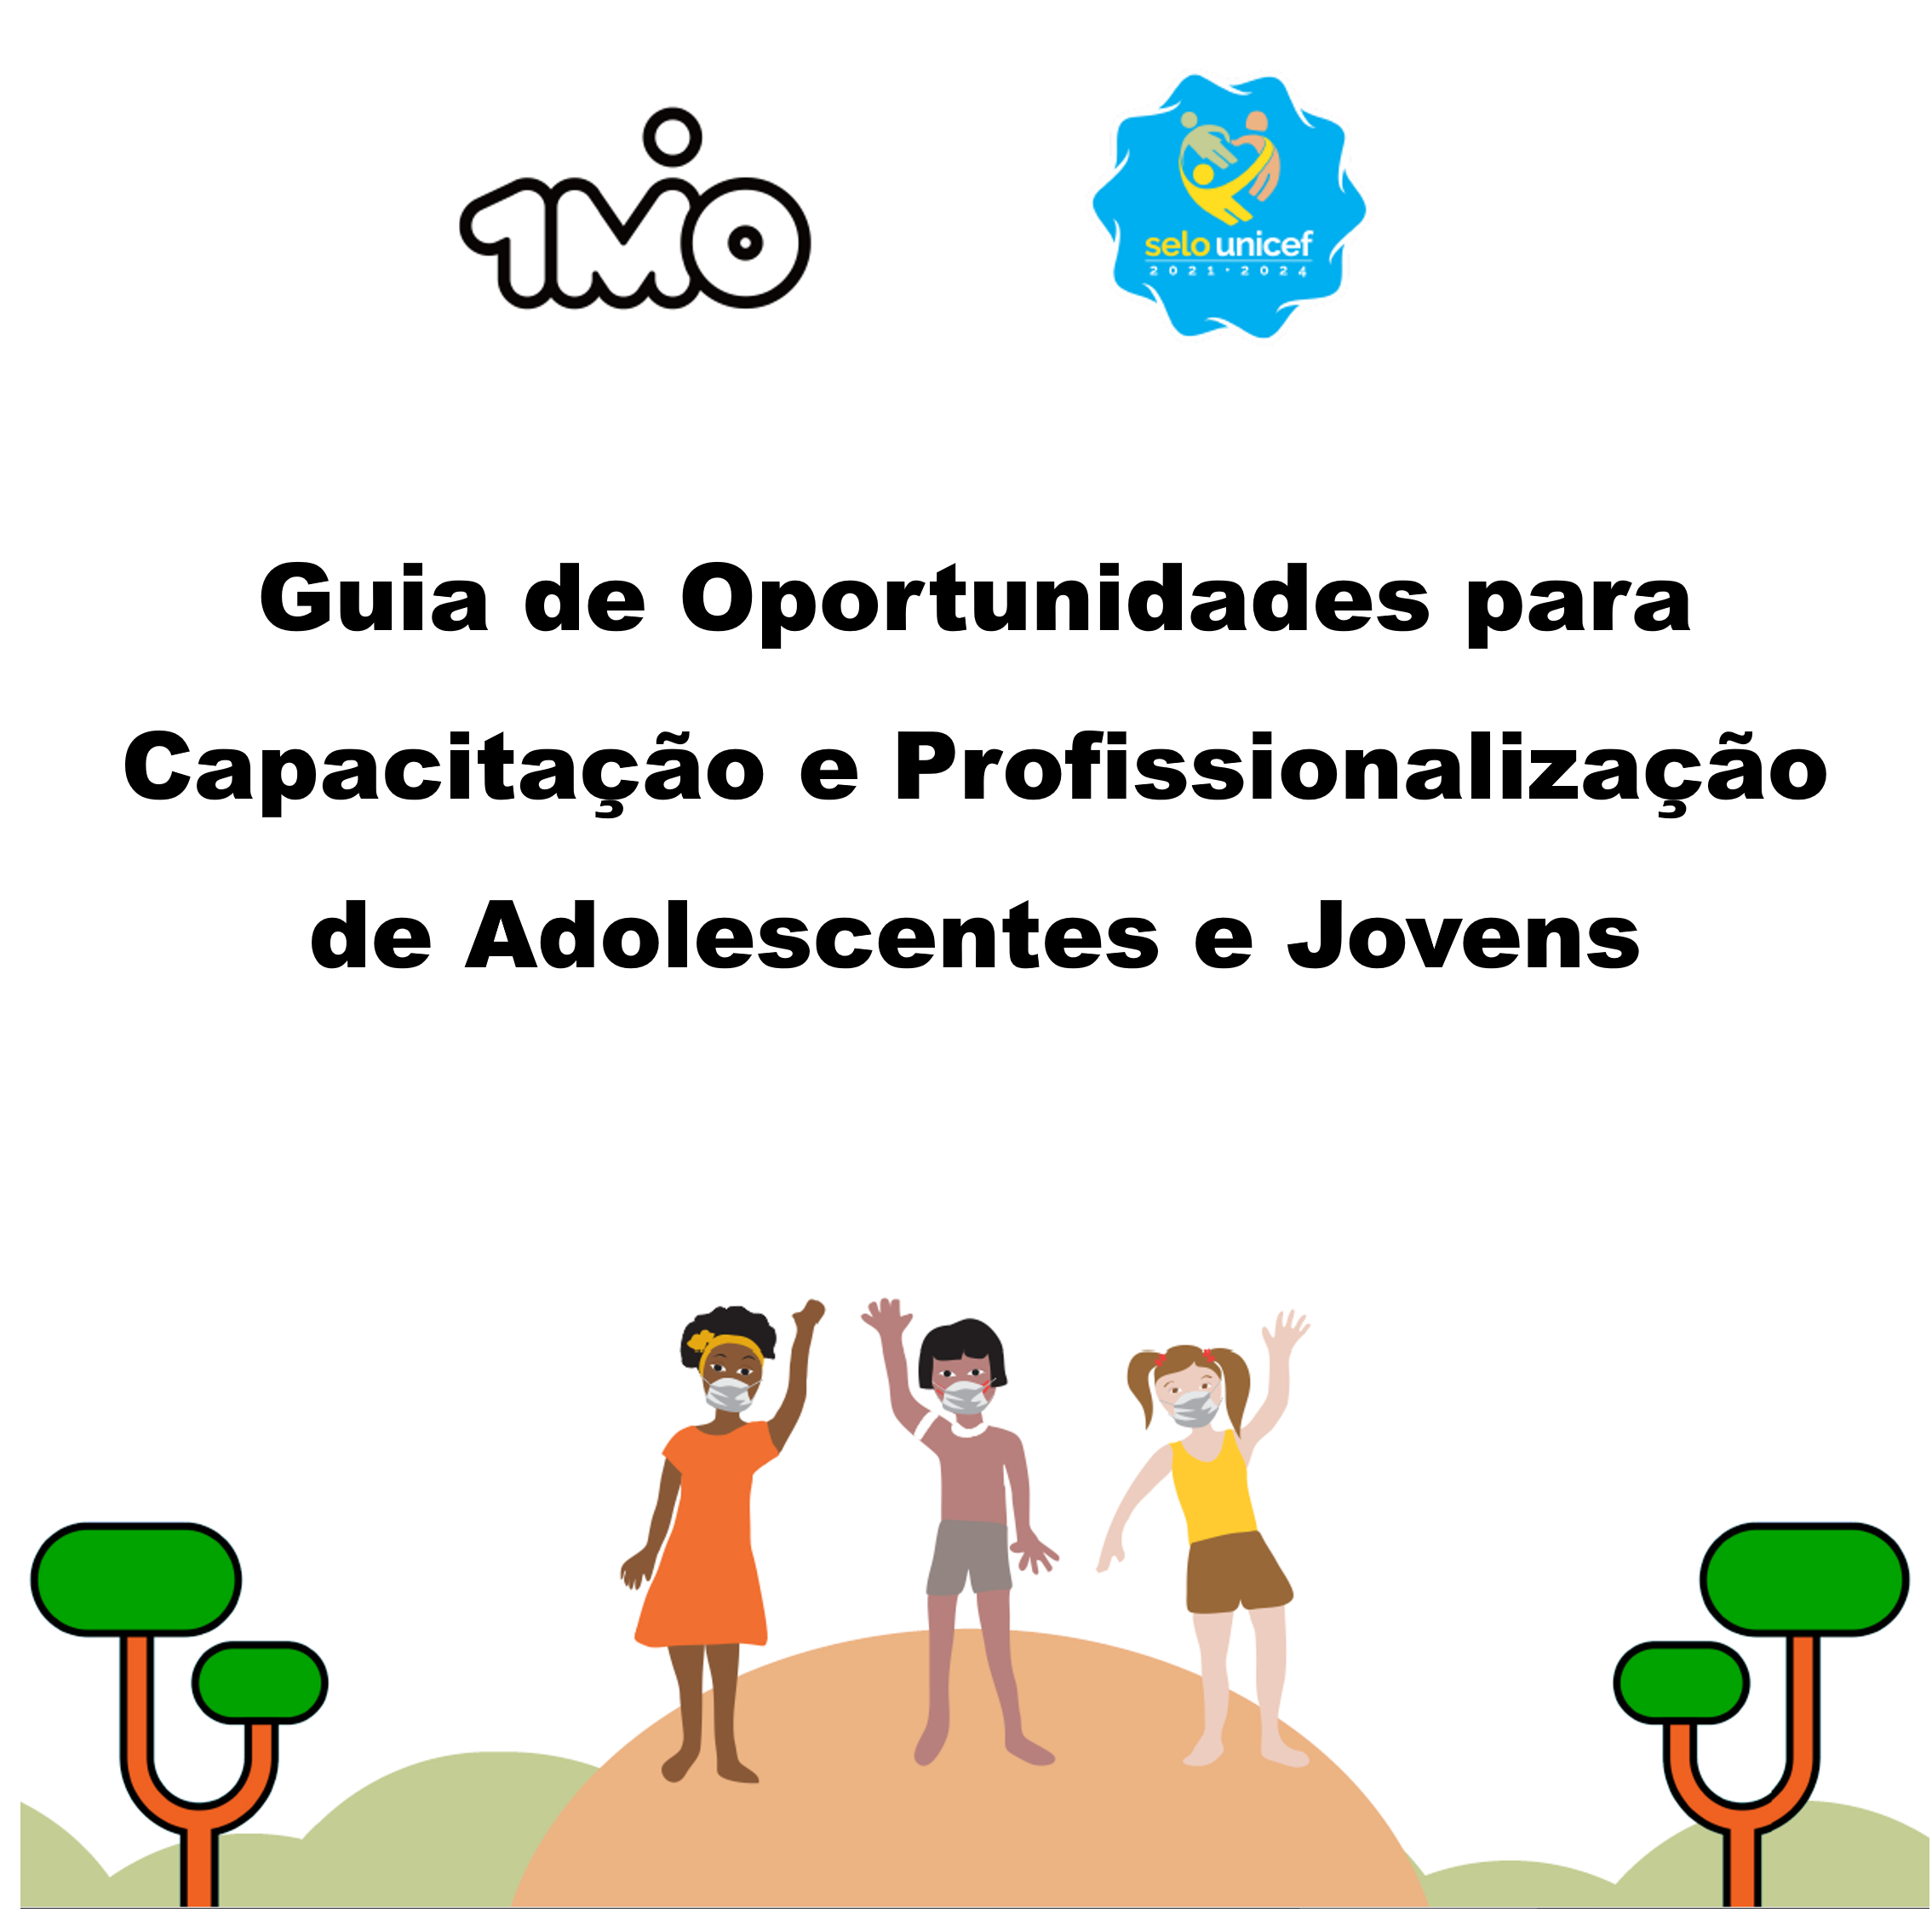 Guia de Oportunidades para Capacitação e Profissionalização de Adolescentes e Jovens no Selo UNICEF